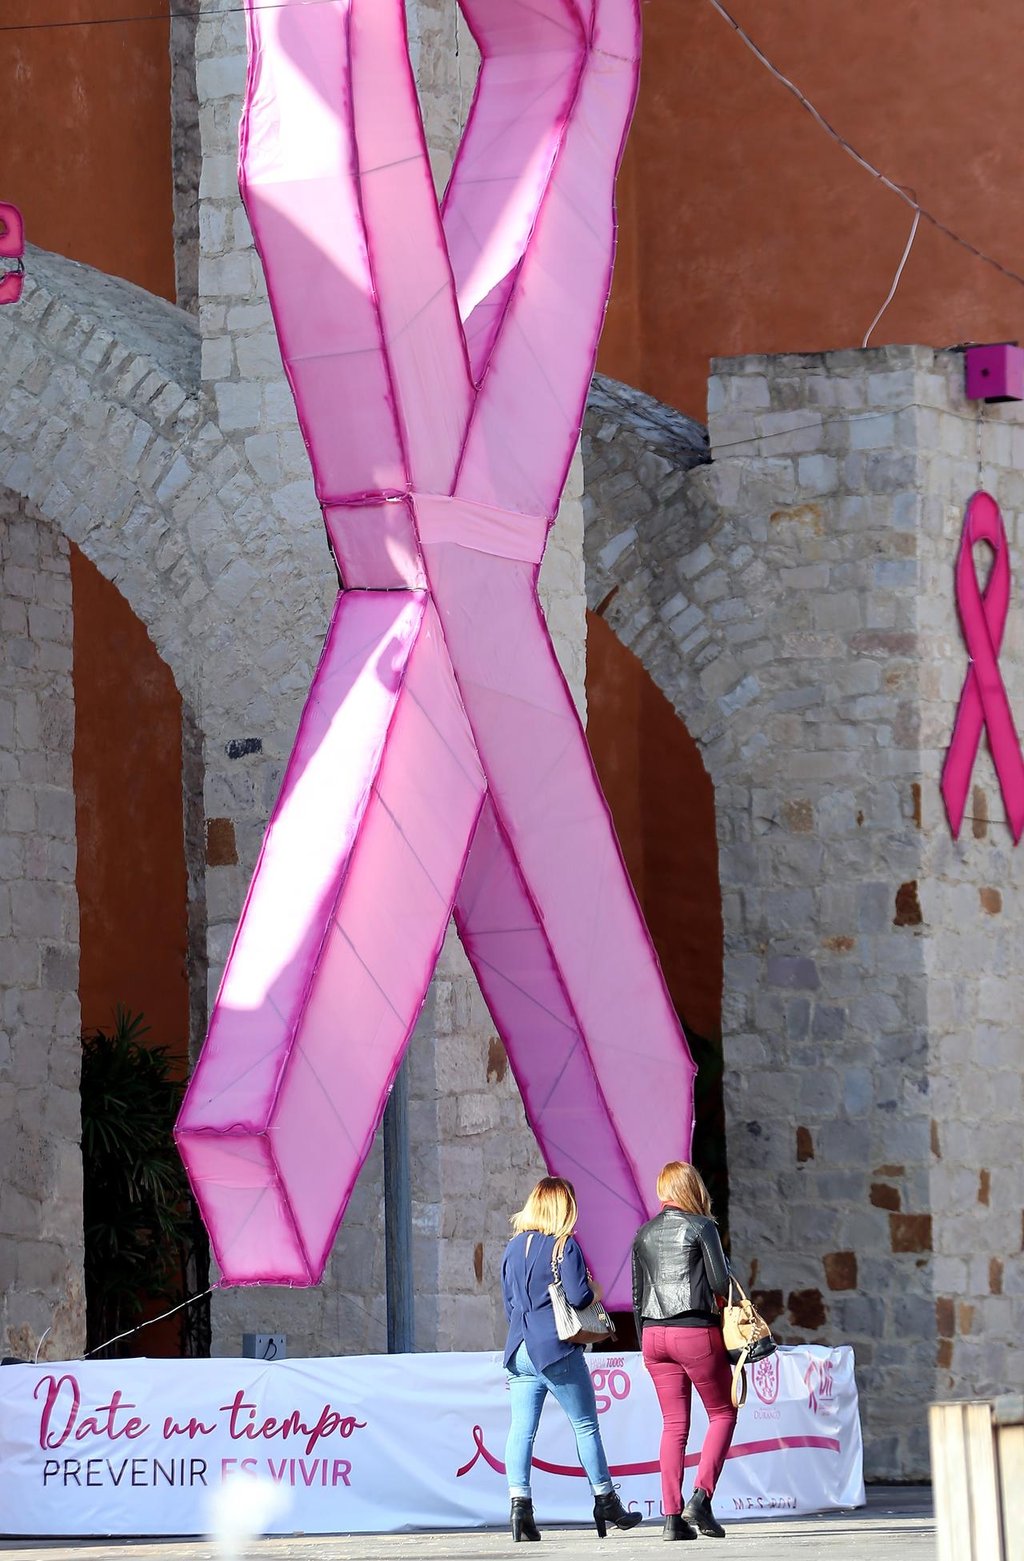 Durango, con alto índice de cáncer de mama pero poca mortalidad